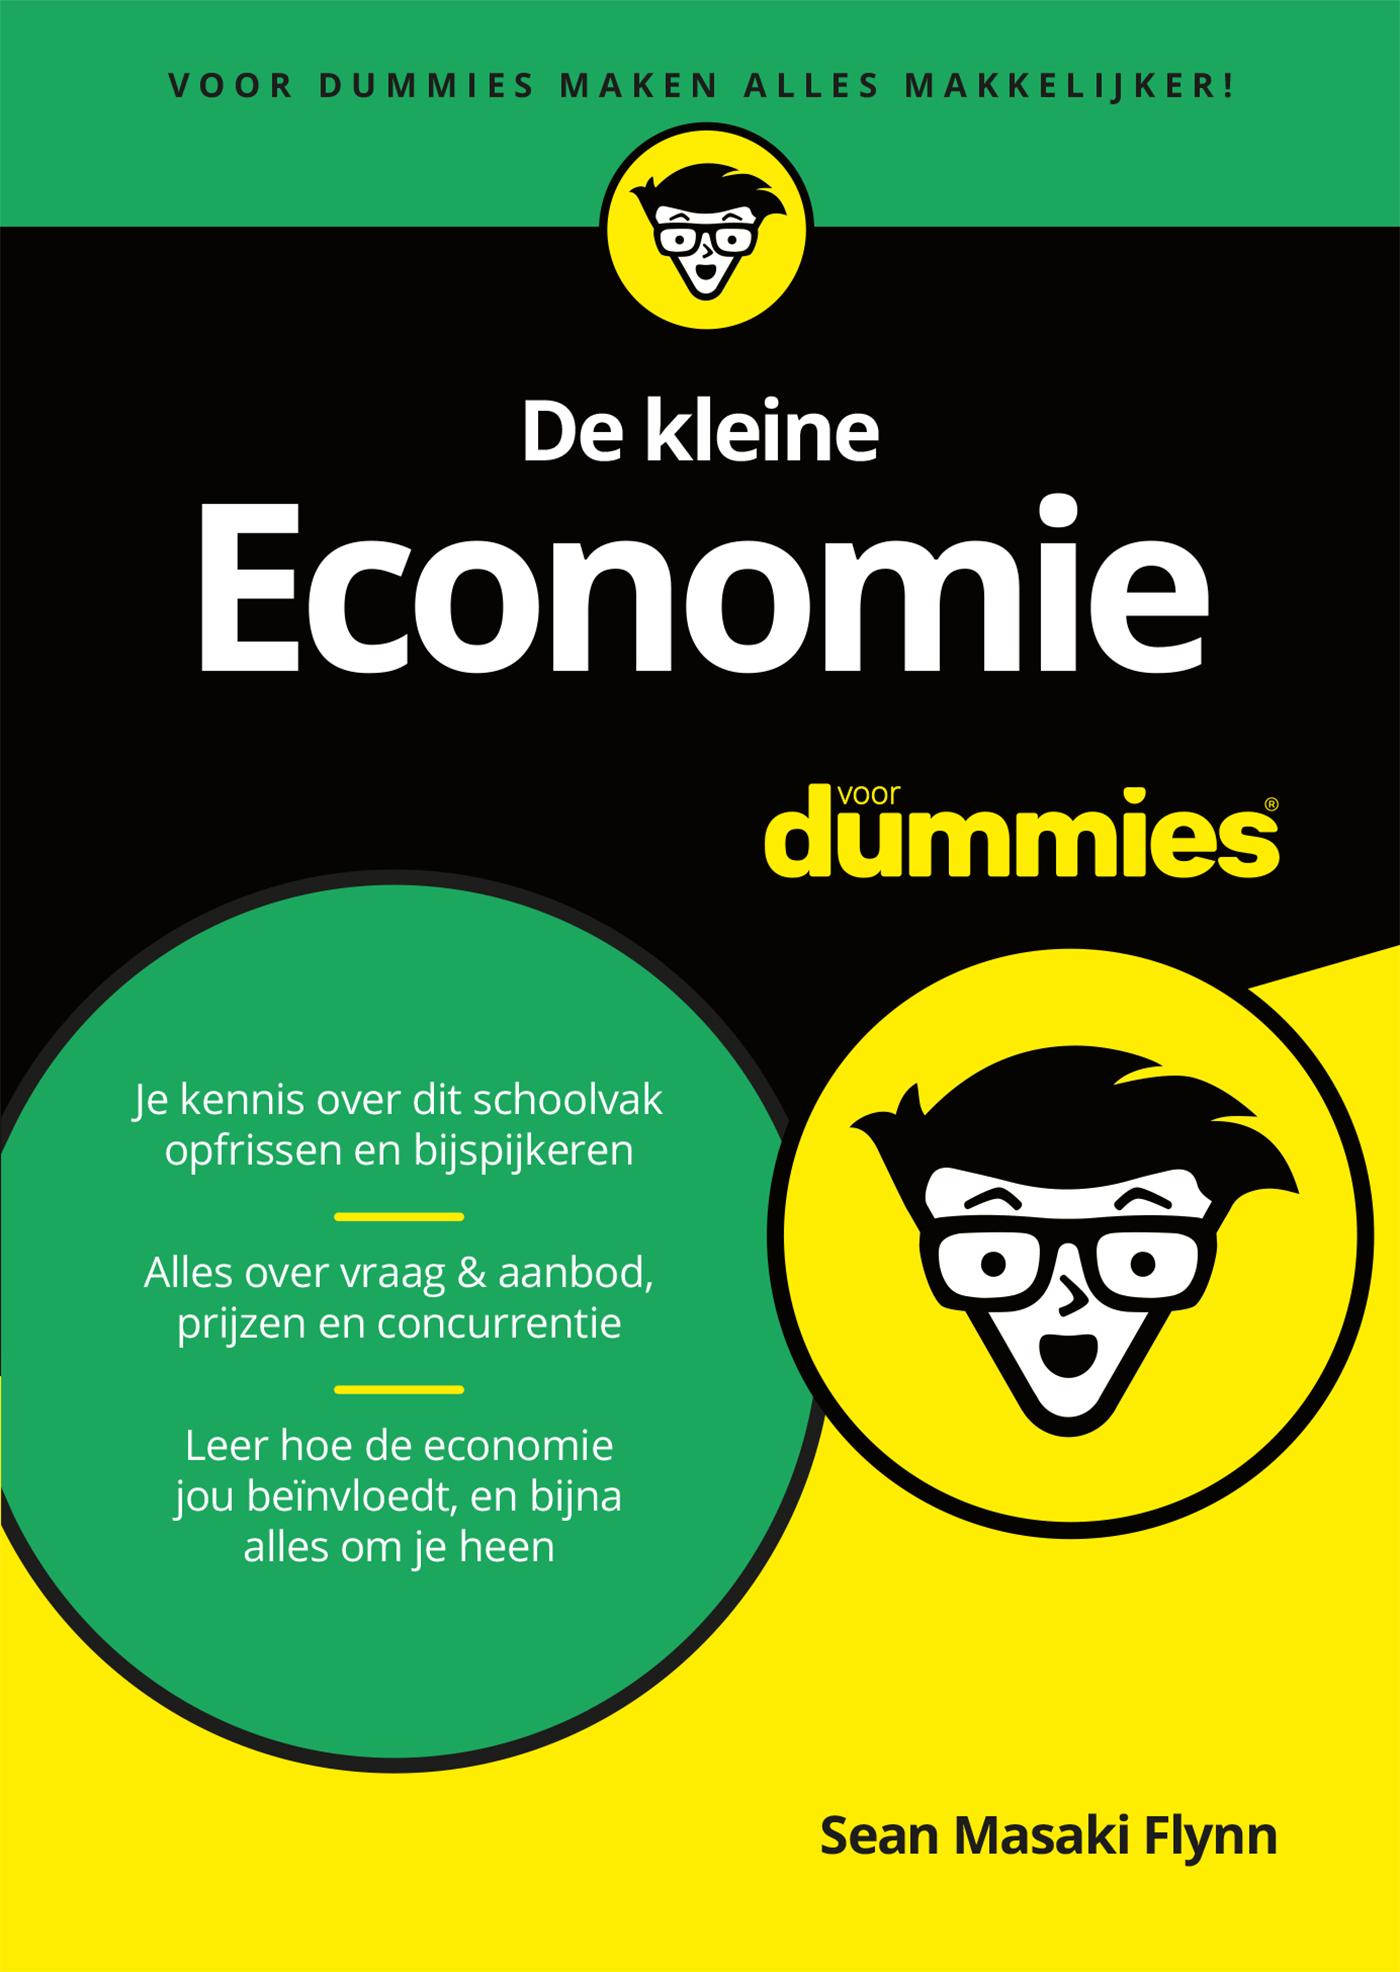 De kleine economie voor dummies (Ebook)